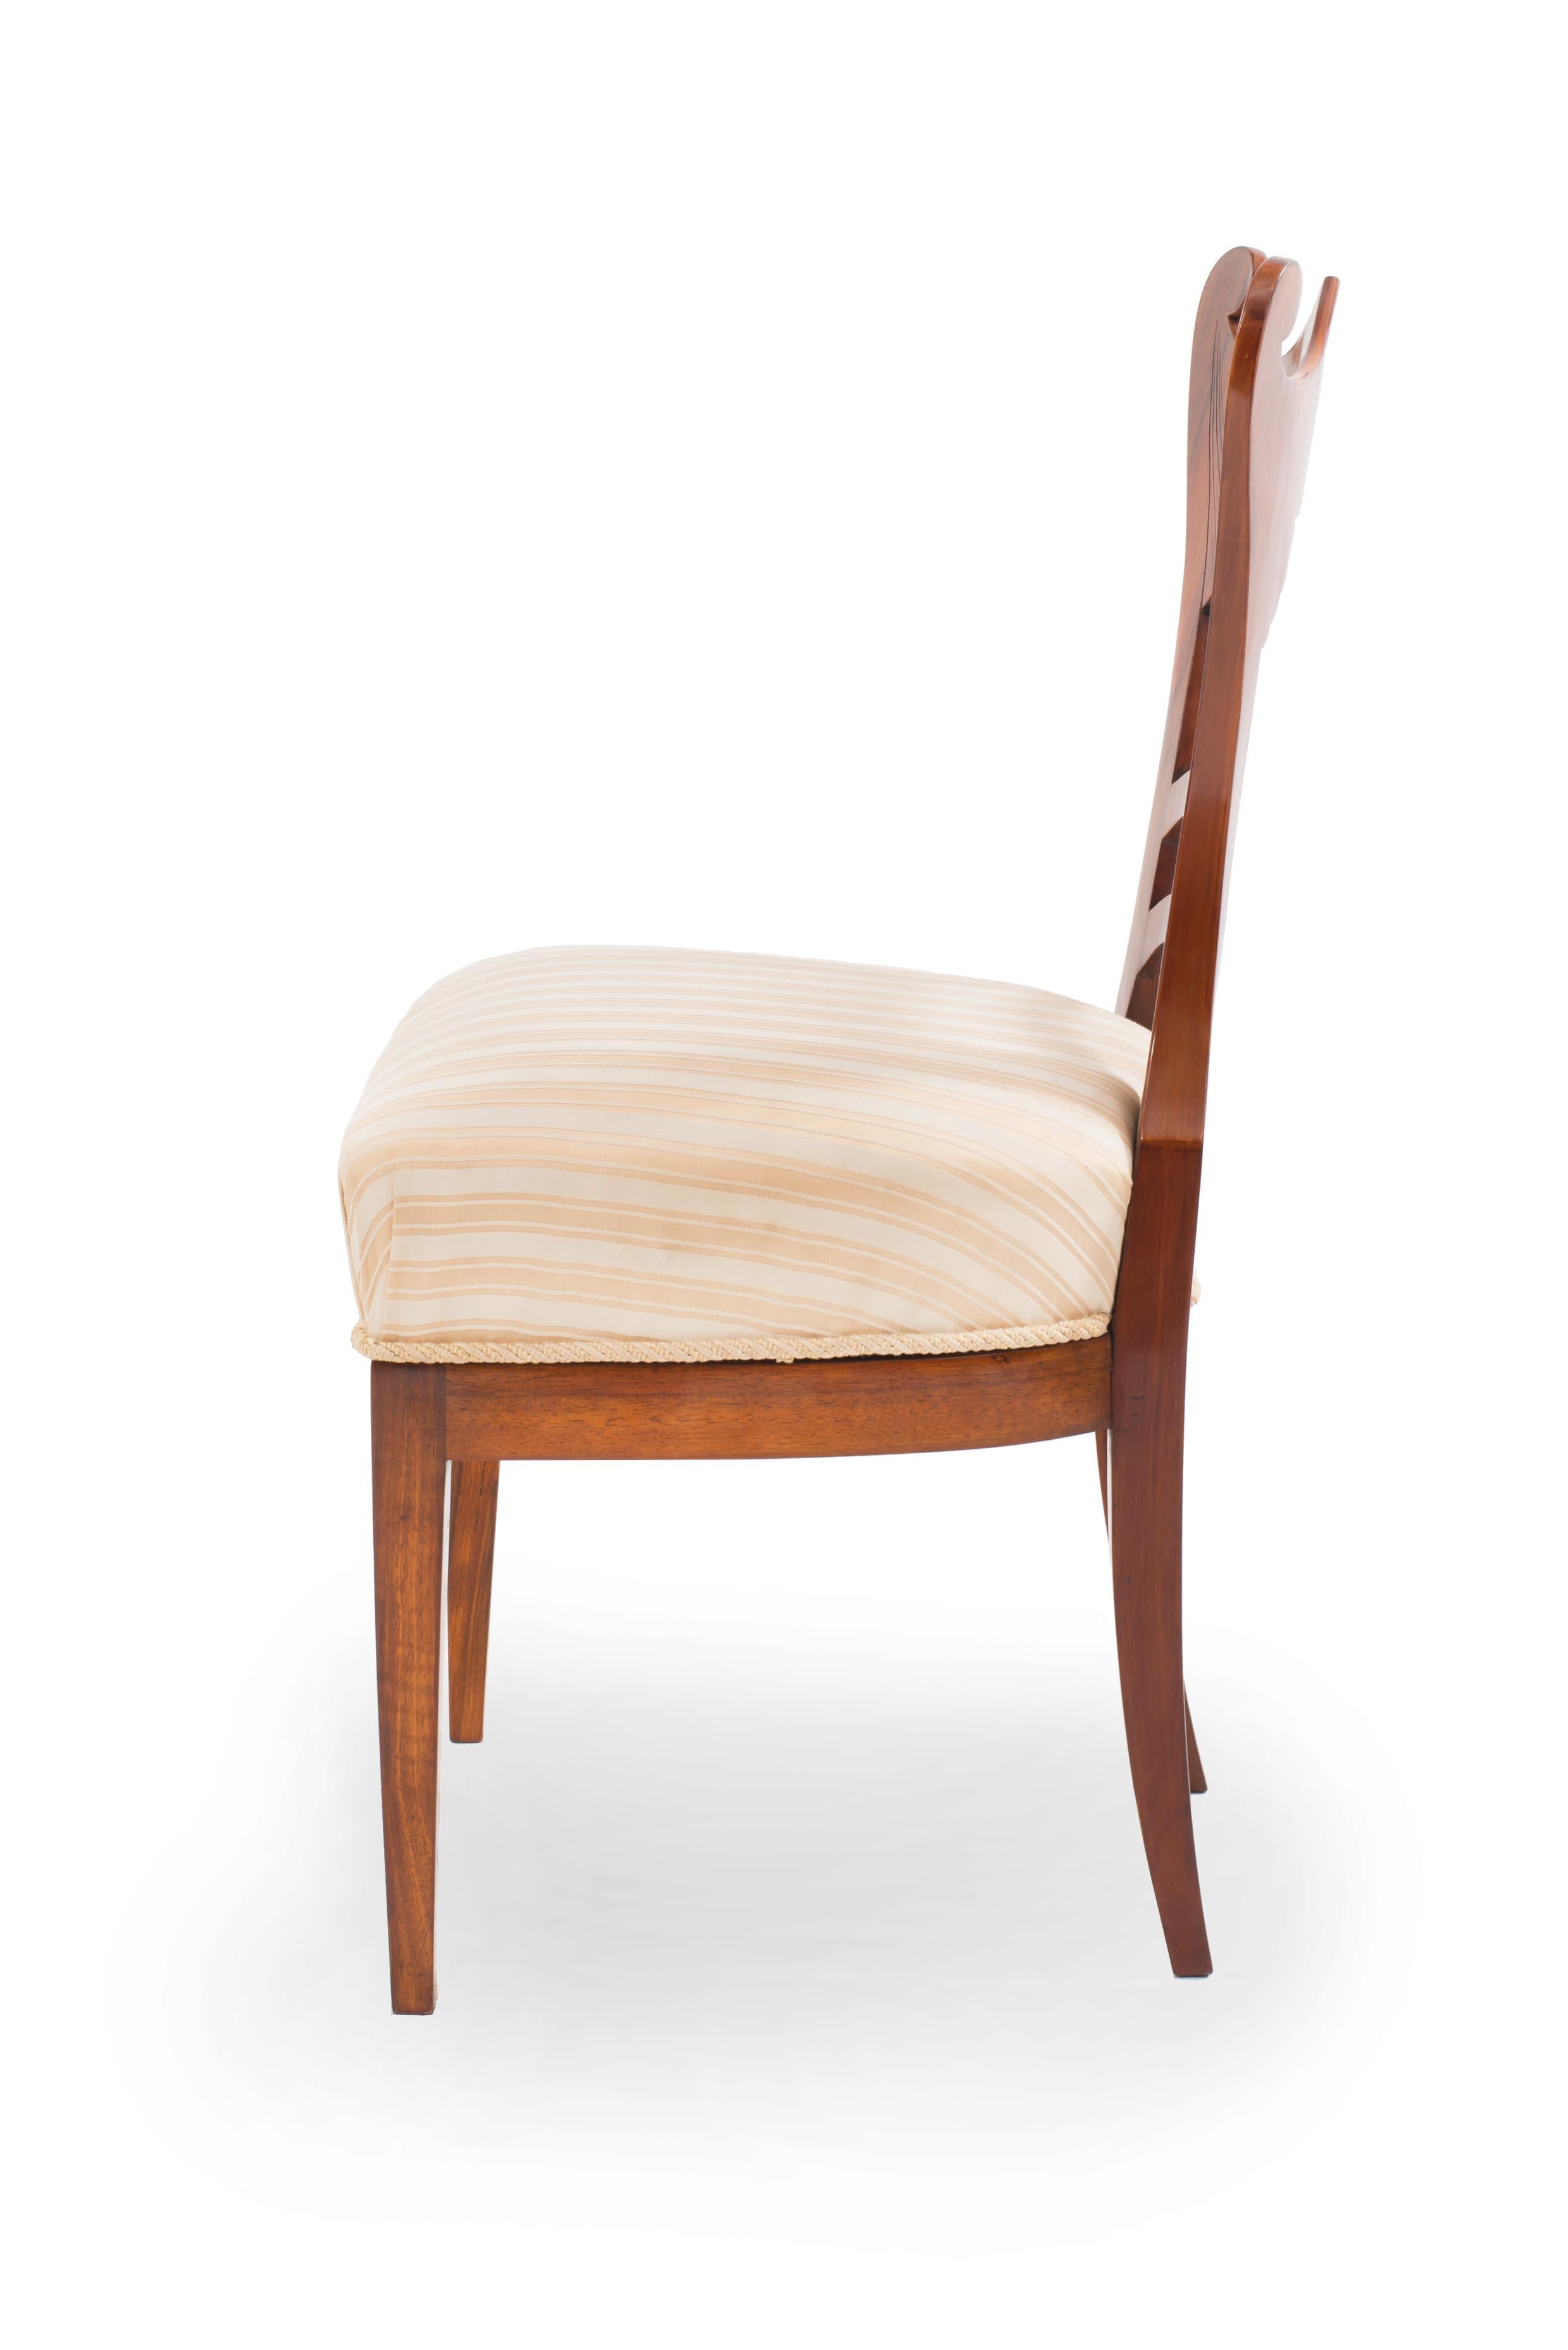 Paar österreichische Biedermeier Beistellstühle aus Kirschbaumholz mit gerolltem und geriffeltem Design auf der Rückenlehne und gepolstertem Sitz. (Um 1830)
